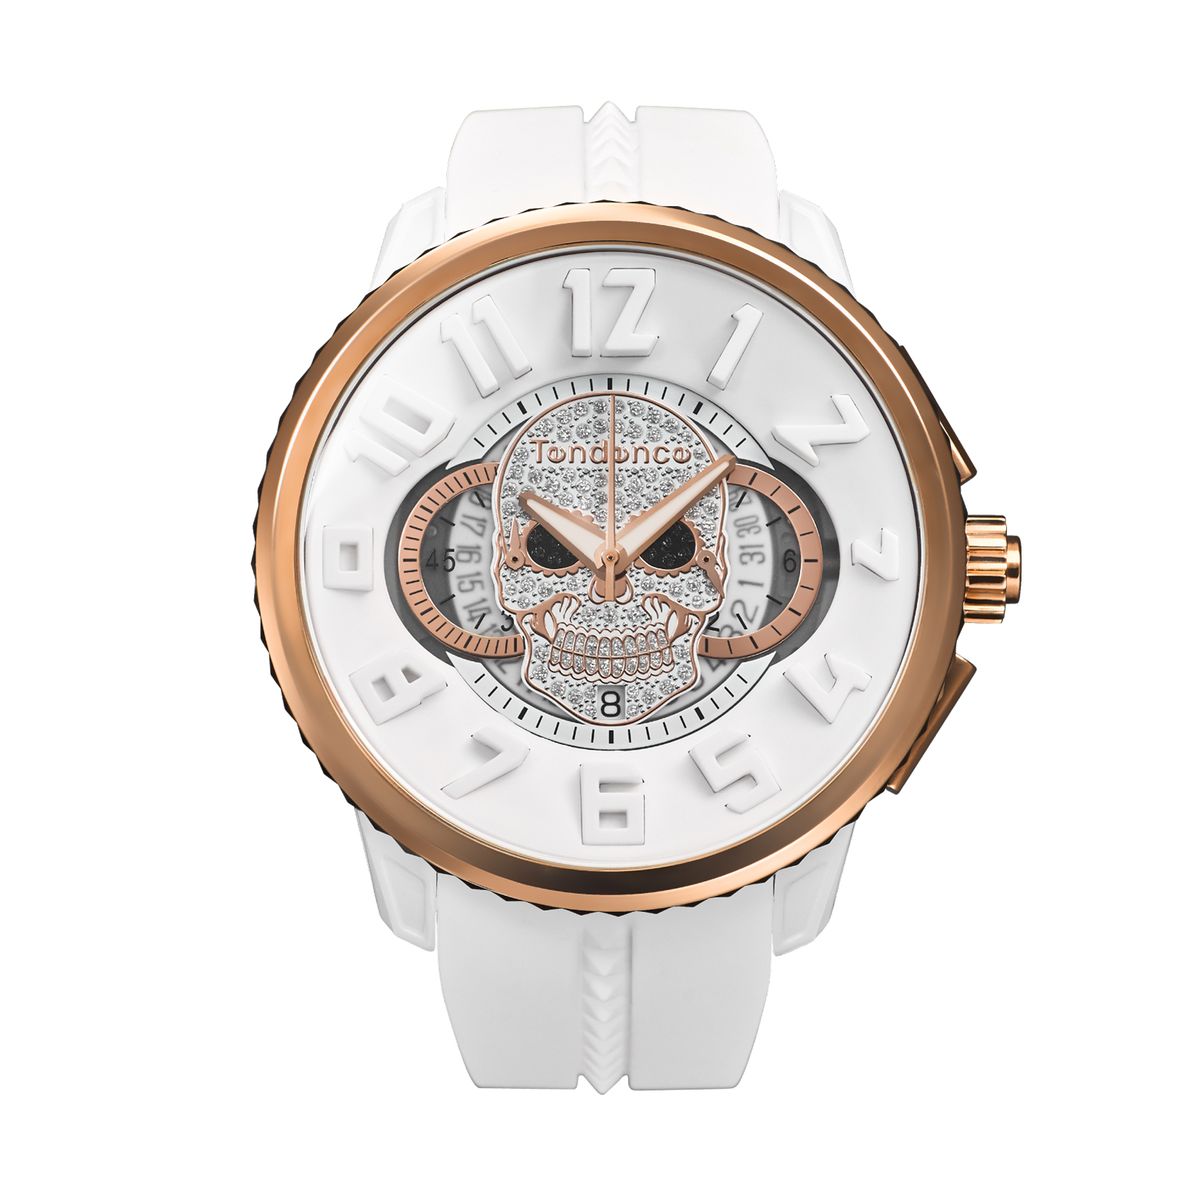 テンデンス テンデンス Tendence TY046029 ガリバー スカル 国内正規品 腕時計